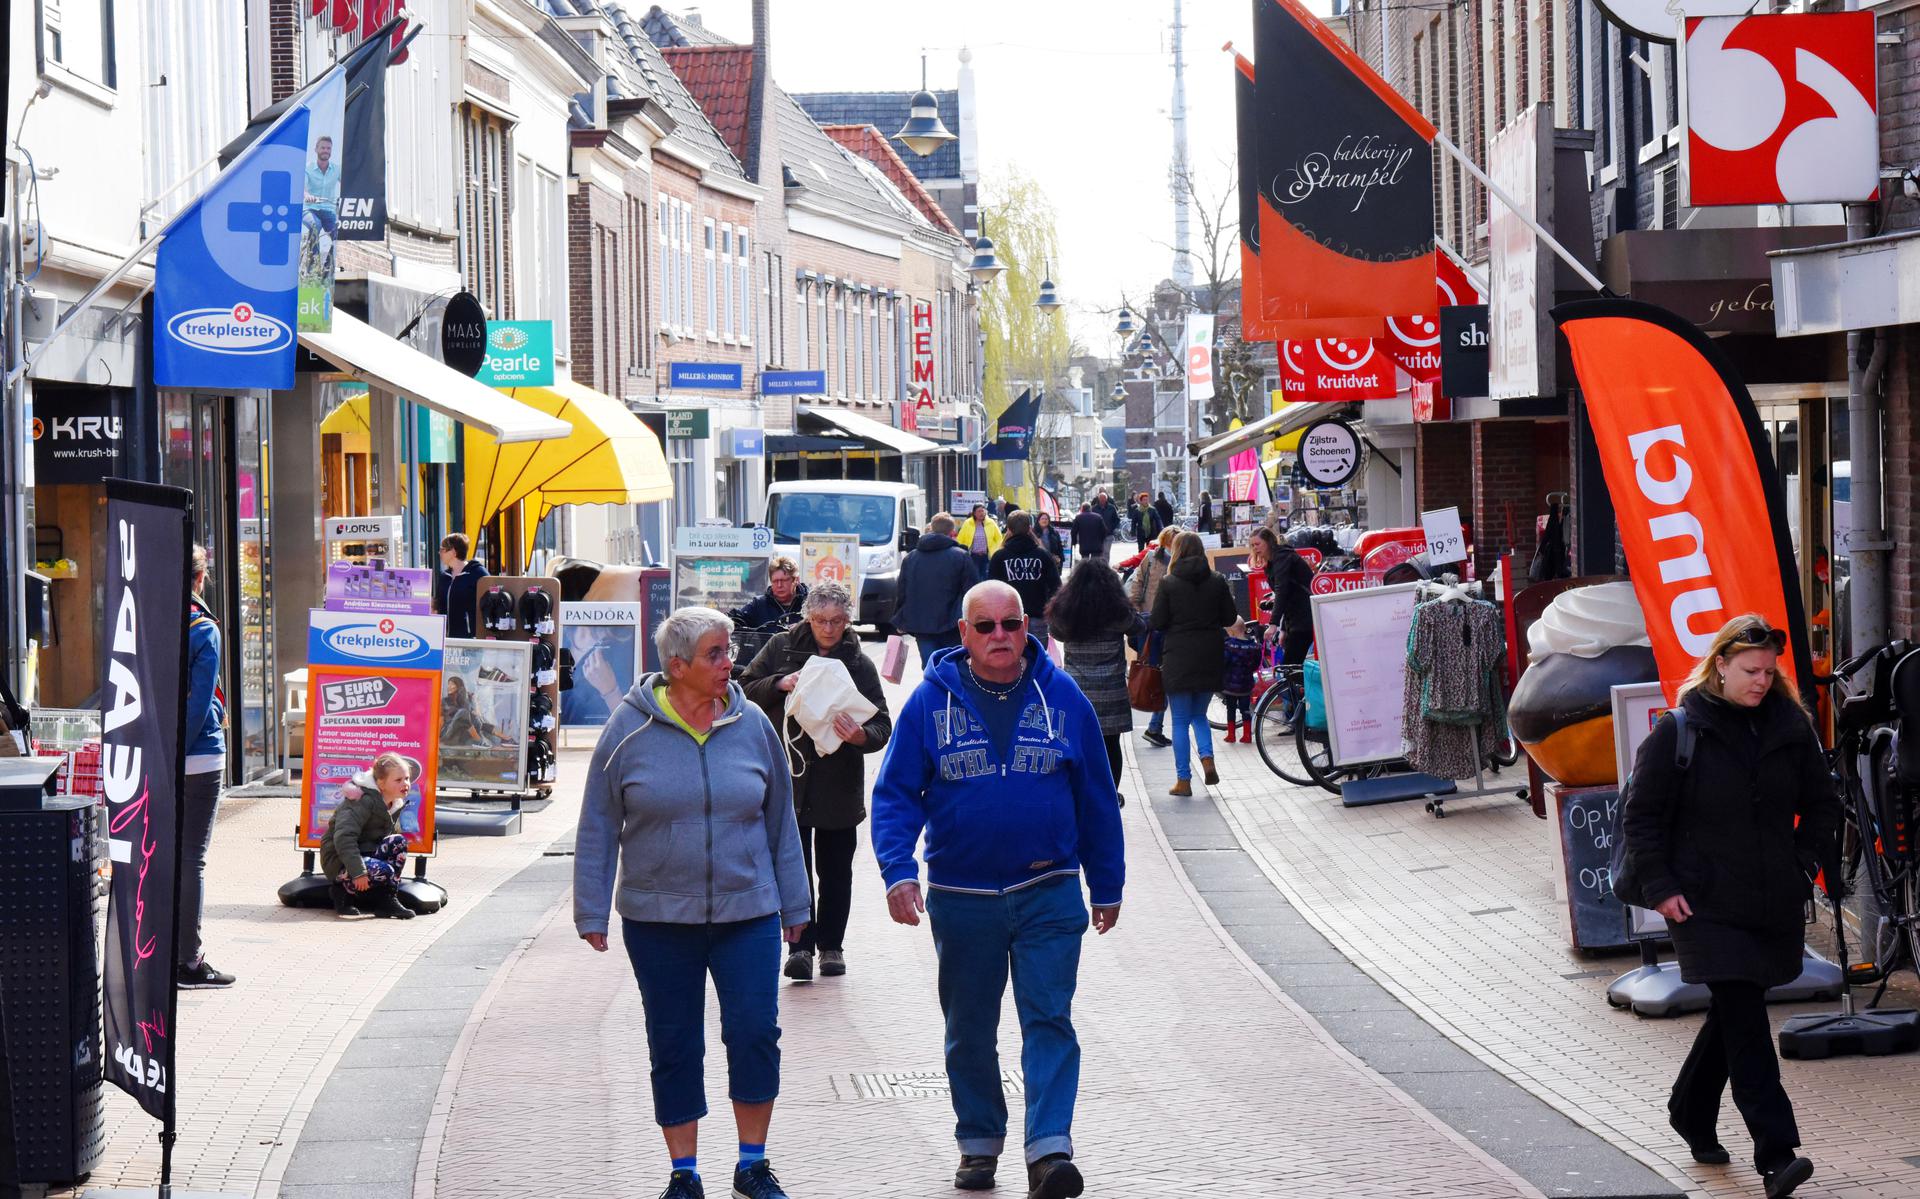 Aanstaande zondag kun je weer gezellig winkelen in Steenwijk. 